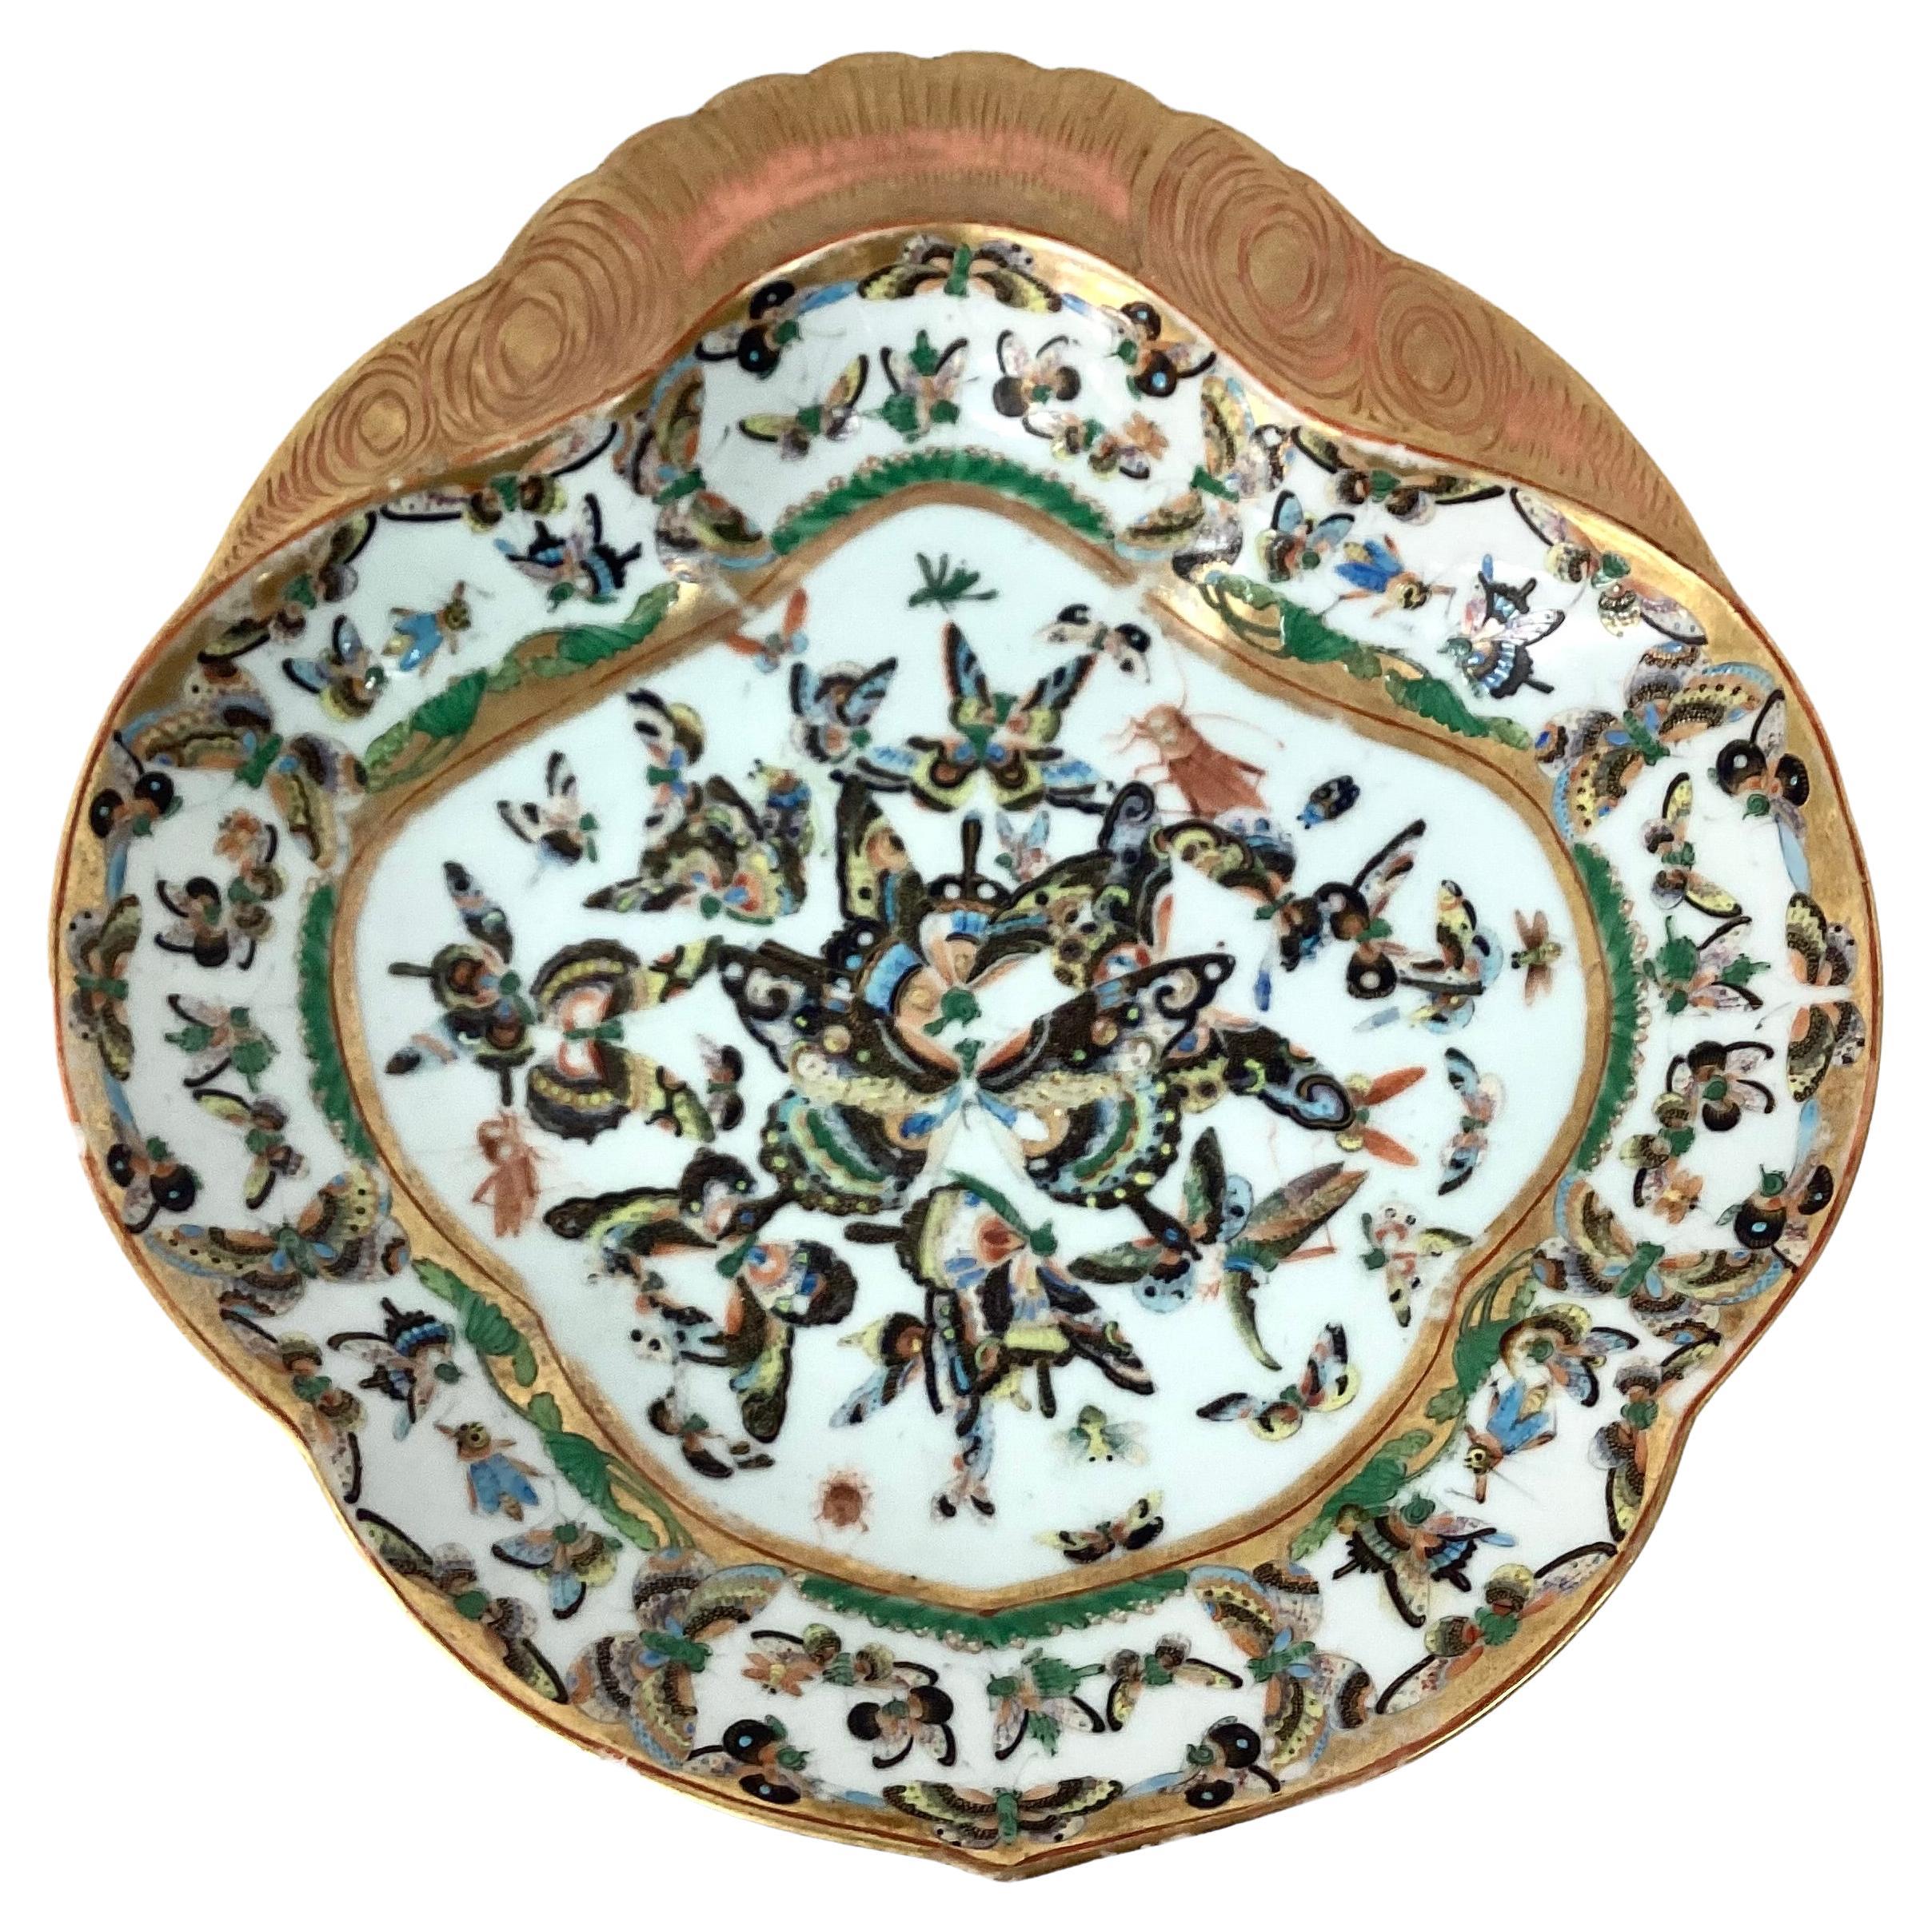 Seltenes Paar antiker chinesischer Export-Porzellan Schmetterling servieren / Garnelen Gericht. Einzigartige Paar Gerichte, die großen vergoldeten Rand und trimmen auf Platten mit Schmetterlingen in grün, schwarz, gelb und gold Farben verziert sind. 